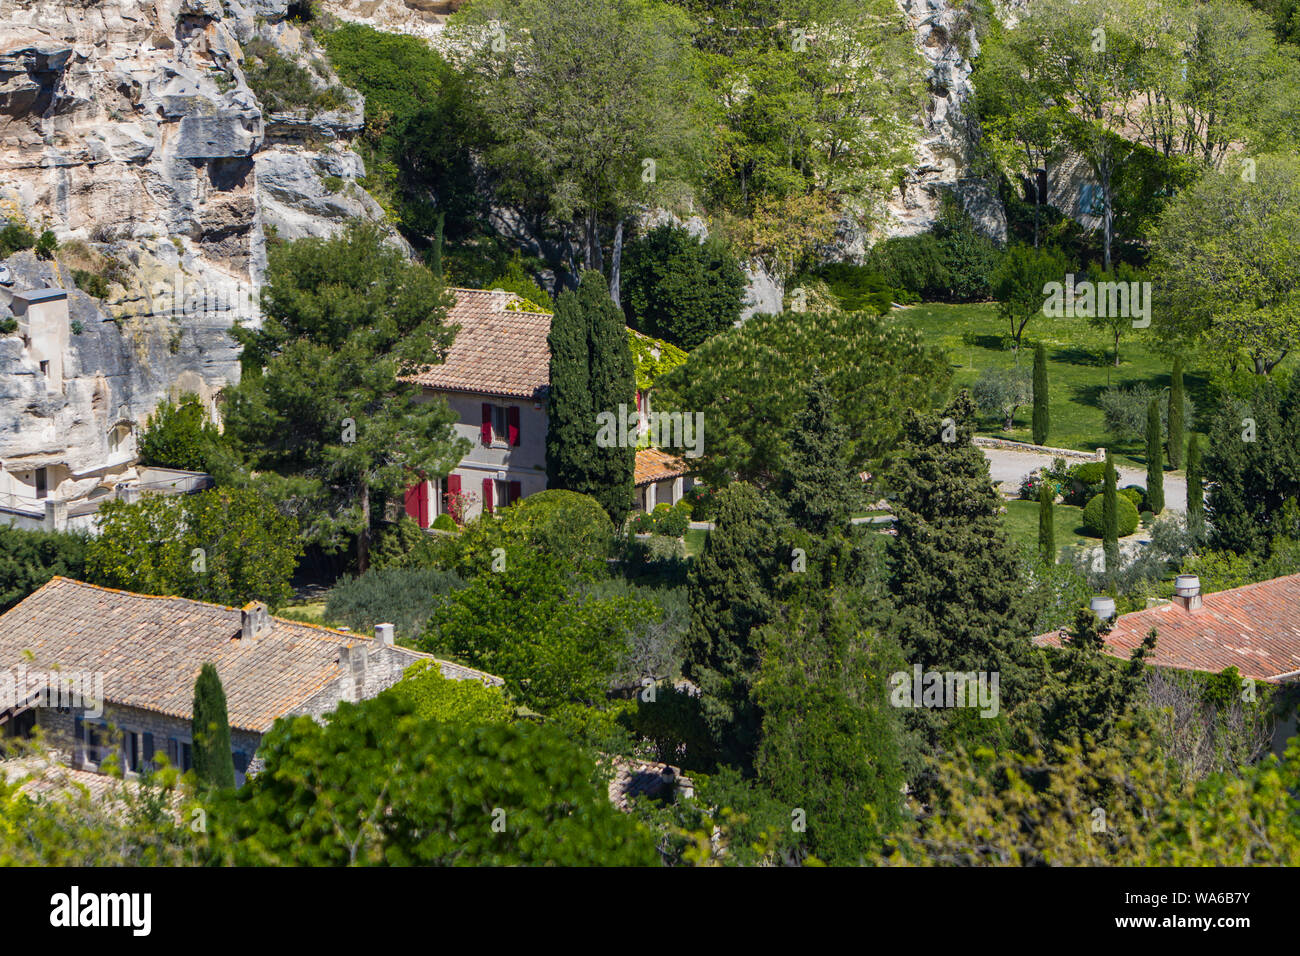 A view on picturesque village Les Baux-de-Provence, France Stock Photo